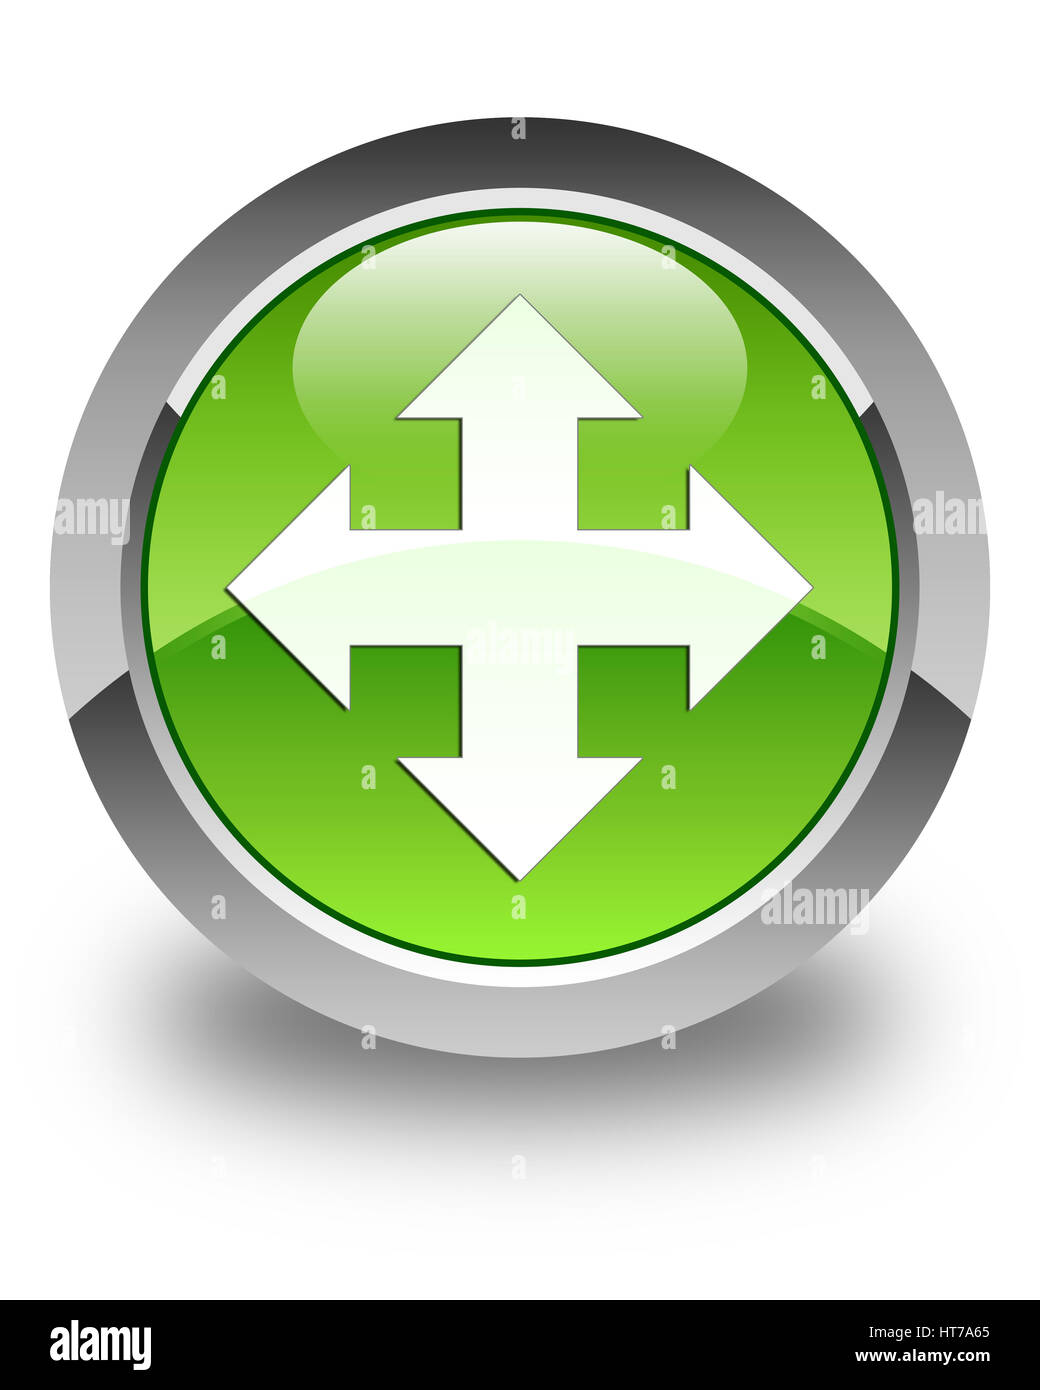 L'icône Déplacer isolé sur le bouton rond vert brillant abstract illustration Banque D'Images